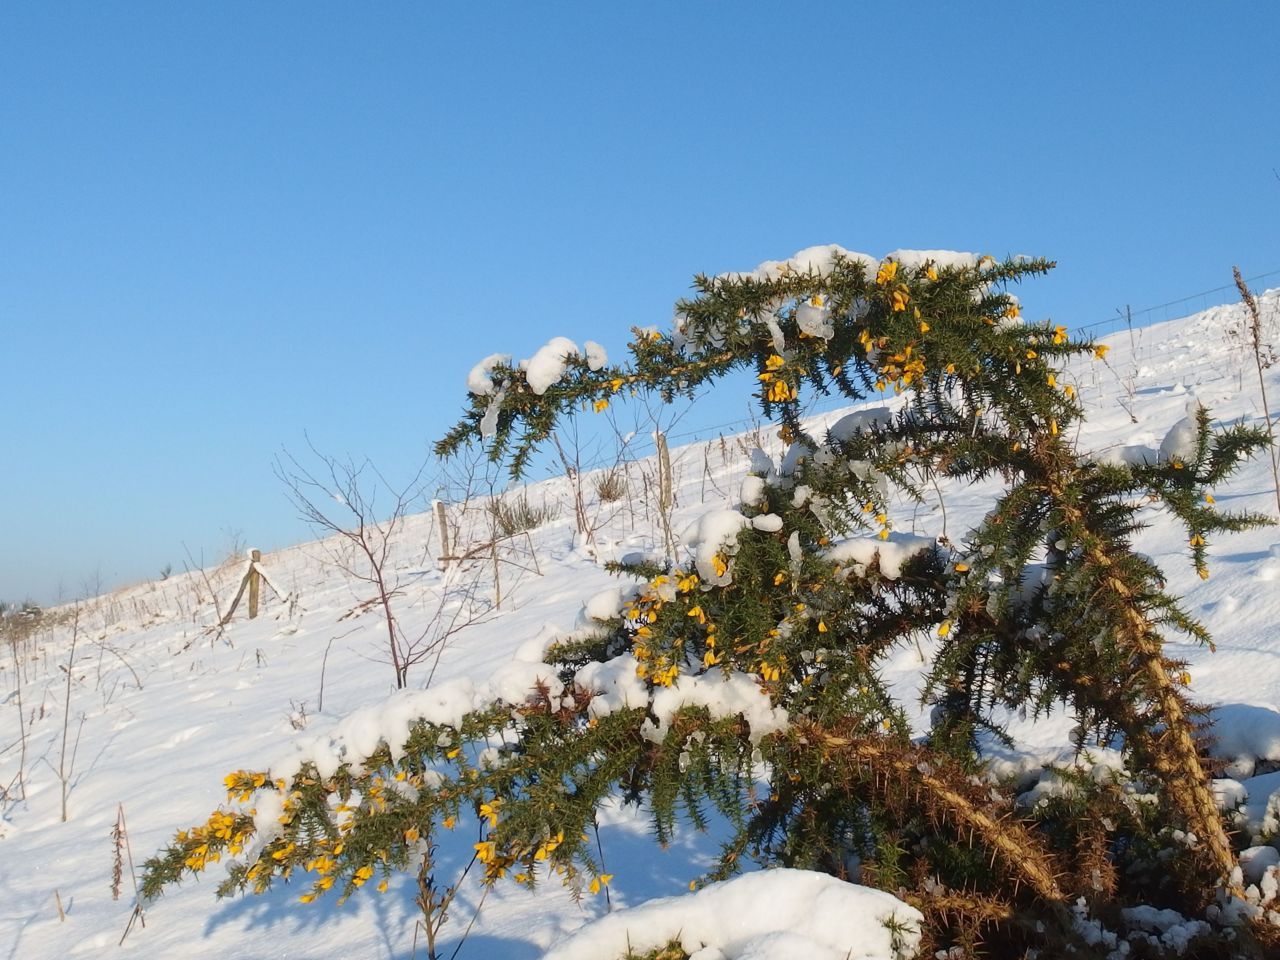 Gaspeldoorn bloeit het hele jaar door: sneeuw of geen sneeuw (foto: Aad van Diemen)